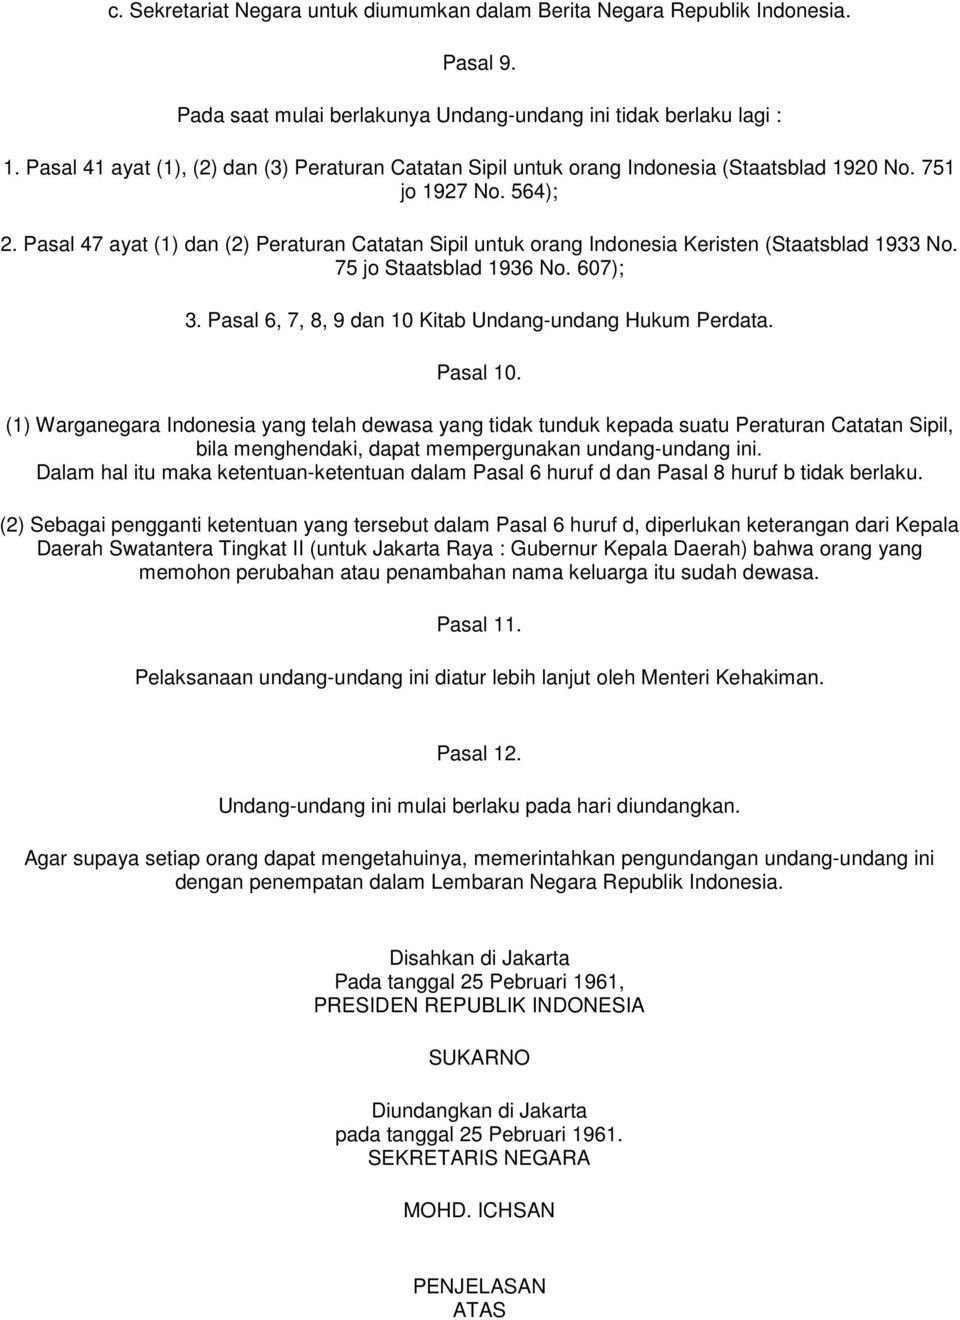 Pasal 47 ayat (1) dan (2) Peraturan Catatan Sipil untuk orang Indonesia Keristen (Staatsblad 1933 No. 75 jo Staatsblad 1936 No. 607); 3. Pasal 6, 7, 8, 9 dan 10 Kitab Undang-undang Hukum Perdata.